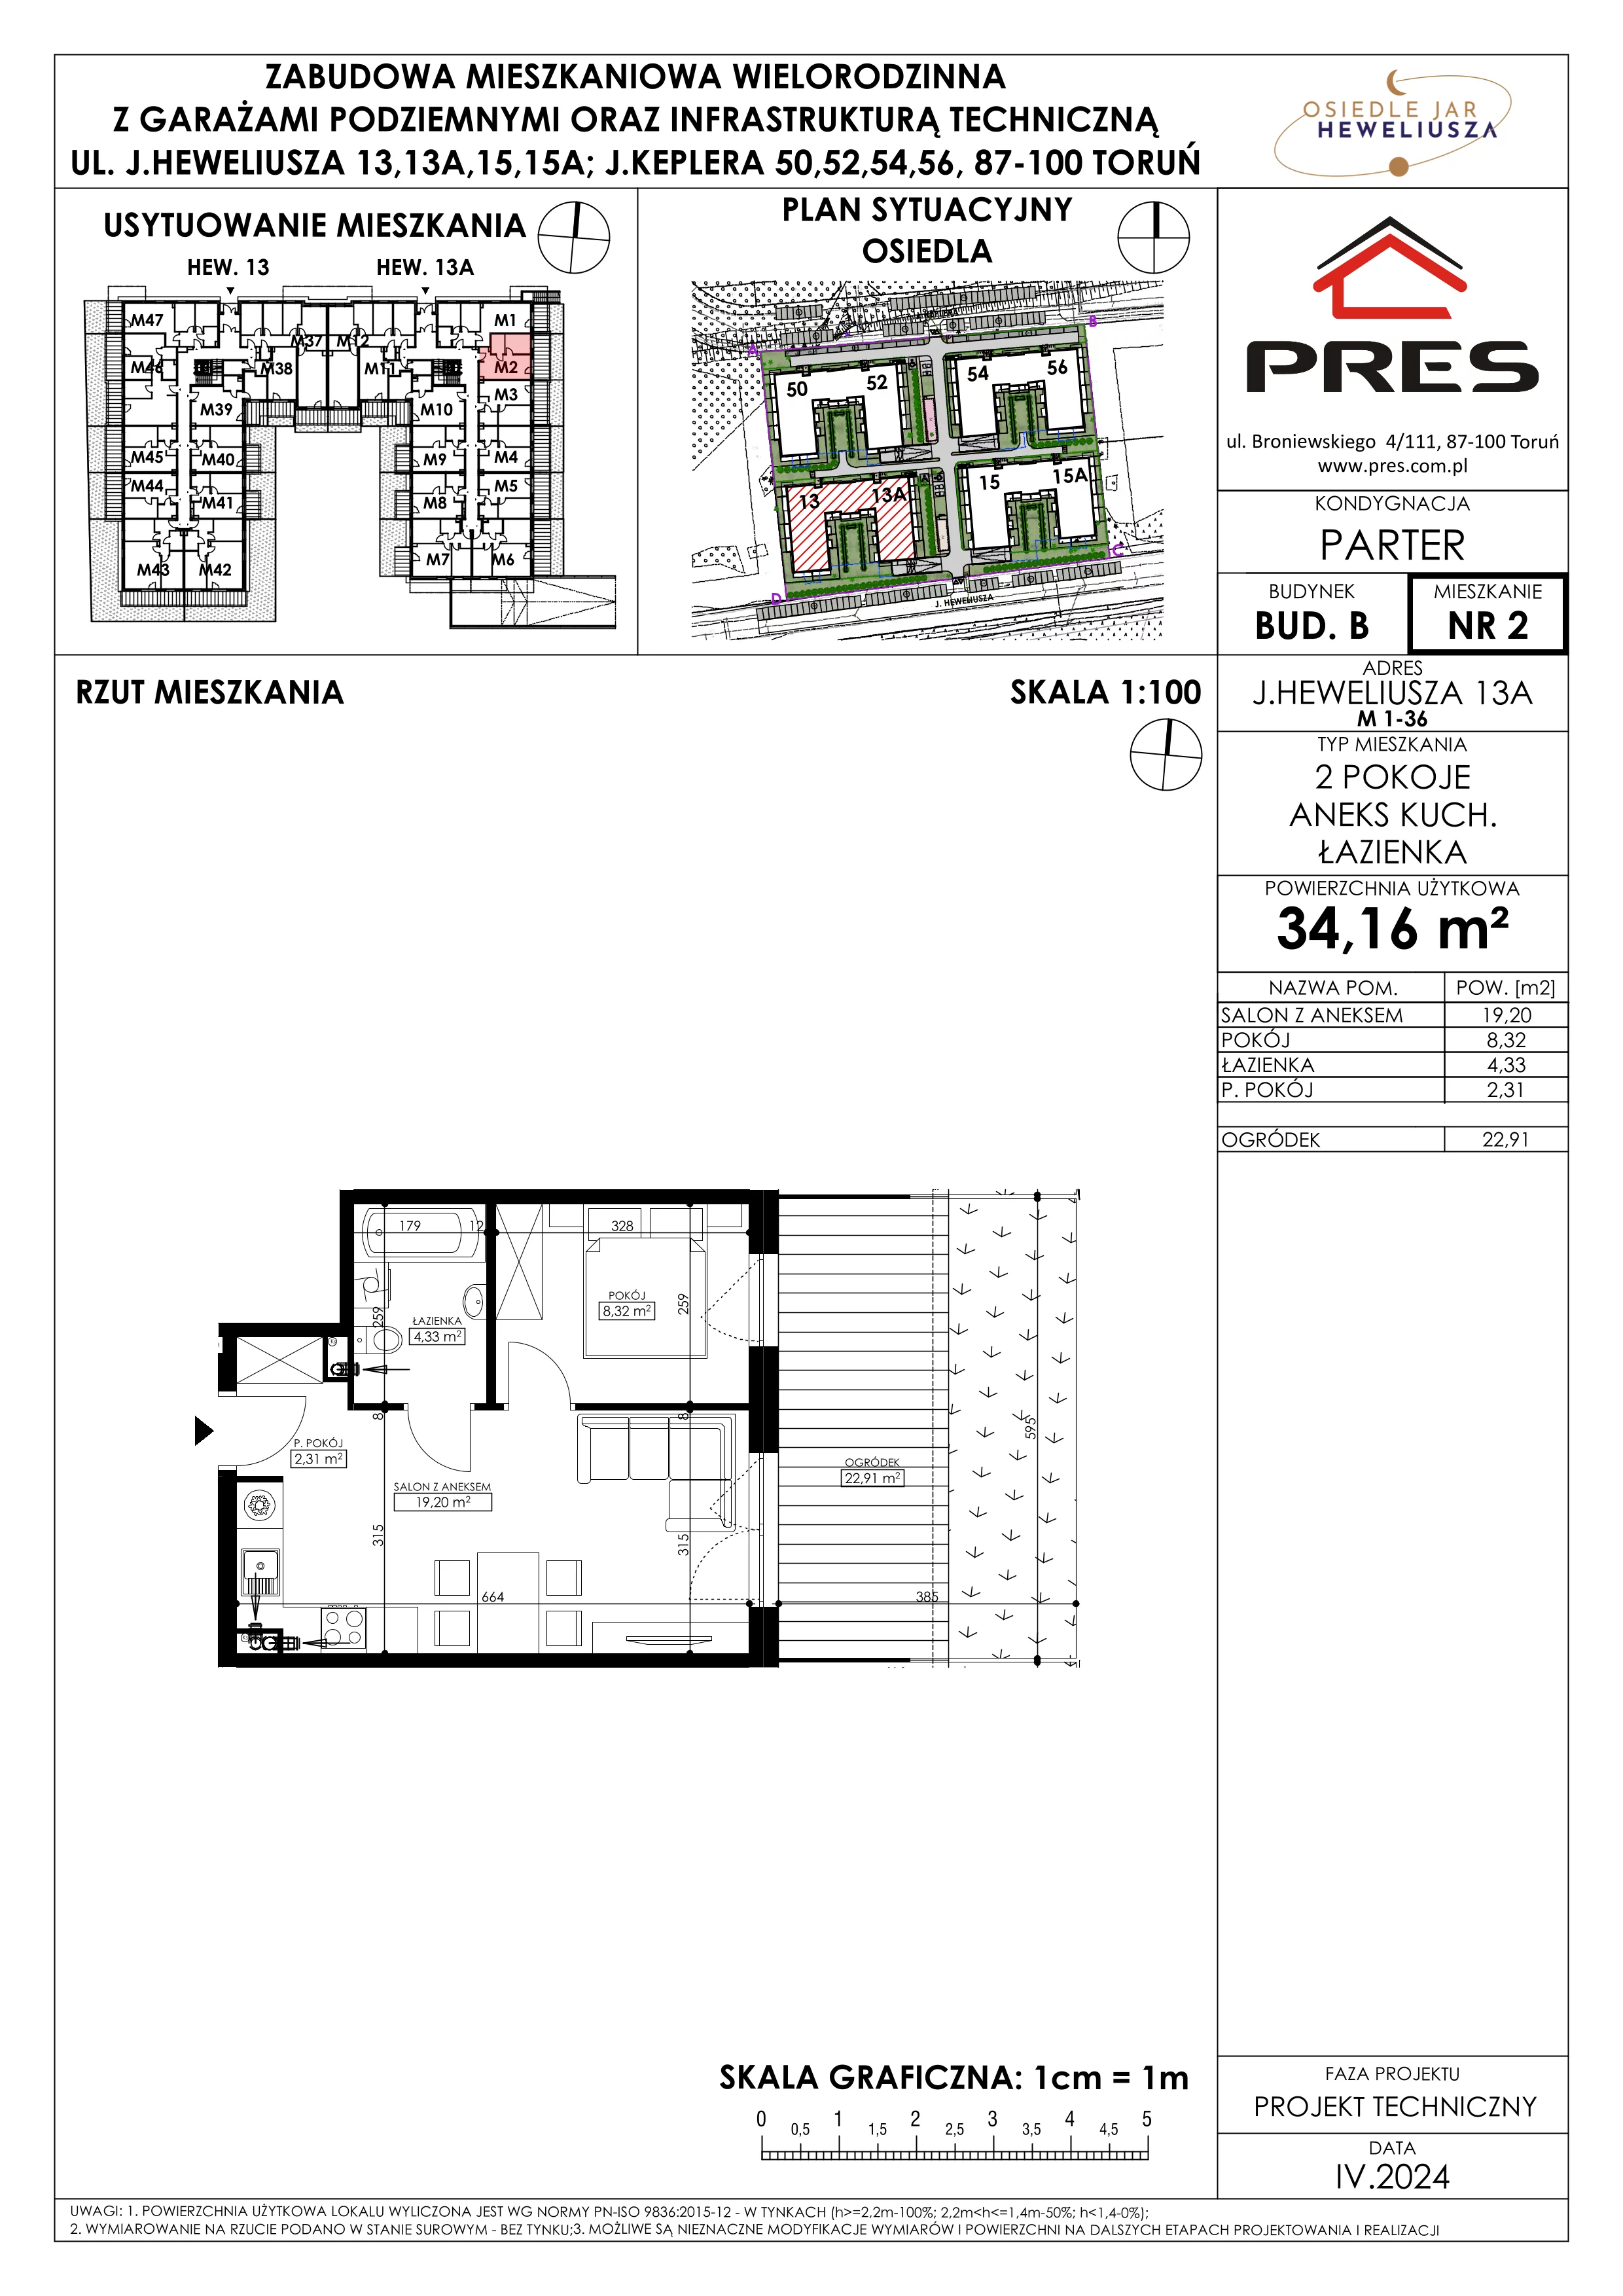 Mieszkanie 34,16 m², parter, oferta nr 2, Osiedle JAR Heweliusza - Etap II, Toruń, Wrzosy, JAR, ul. Heweliusza 13-15A